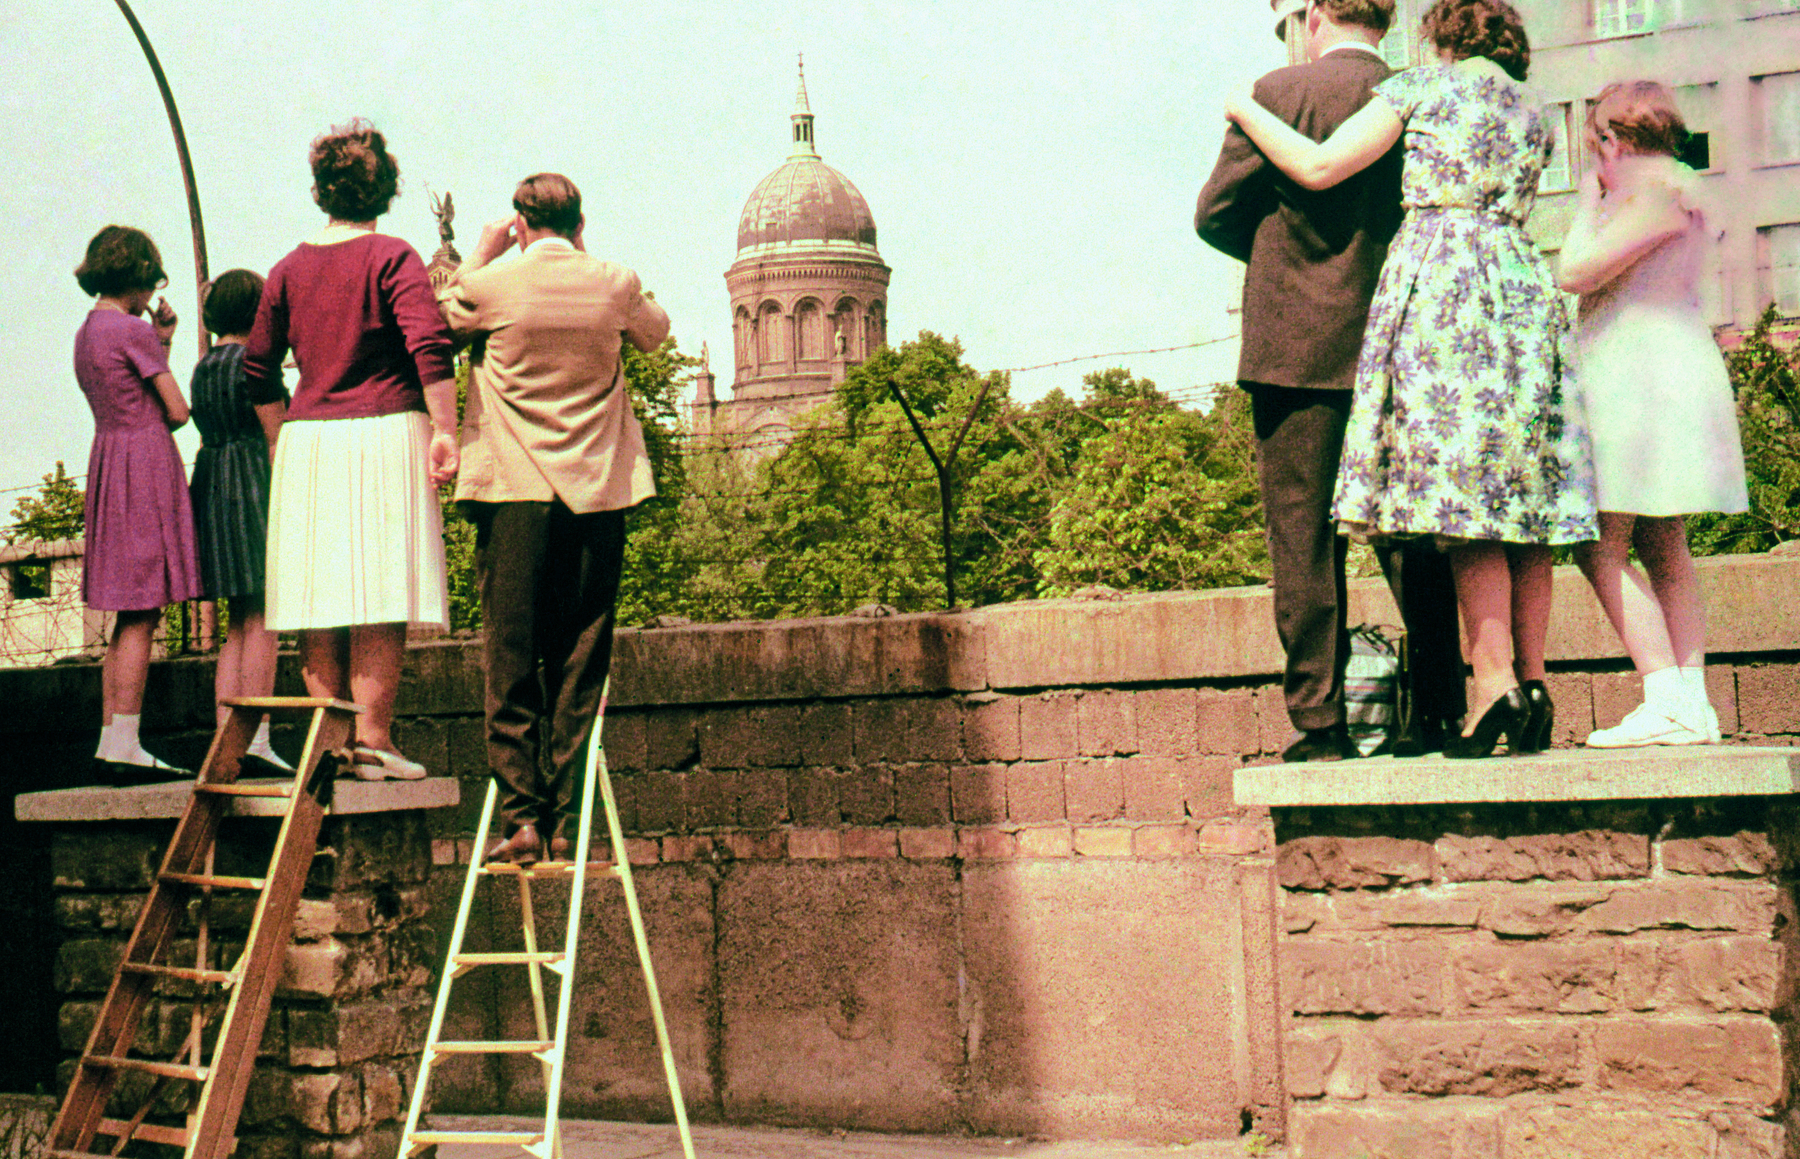 Fotografia. Um grupo de pessoas vistas de costas, em pé sobre muretas e escadas, observa o que há para além de um muro de tijolos. Em segundo plano, uma construção com uma cúpula de formato arredondado.